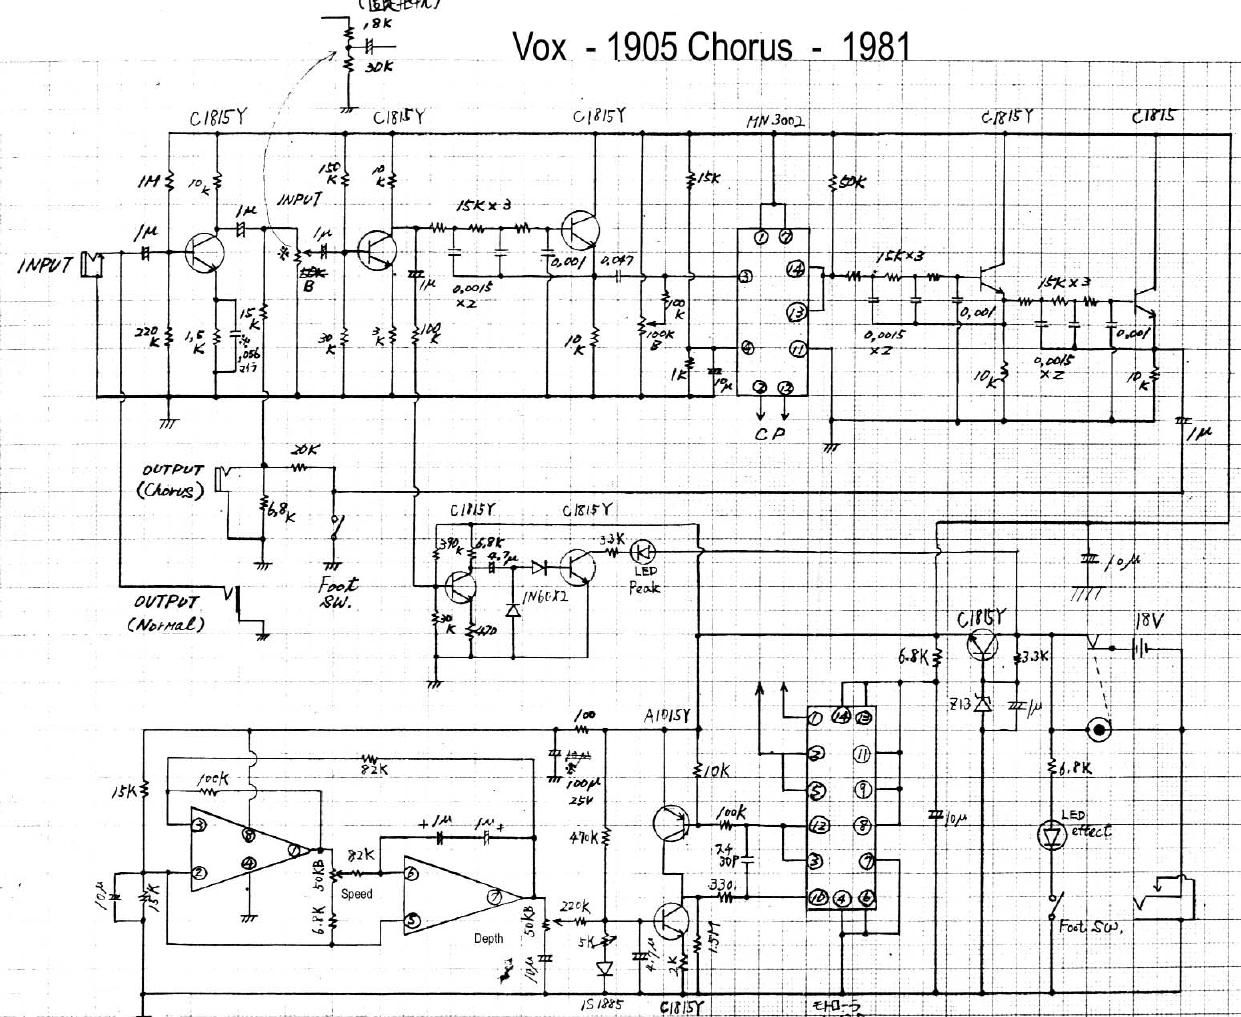 vox 1905 chorus schematic